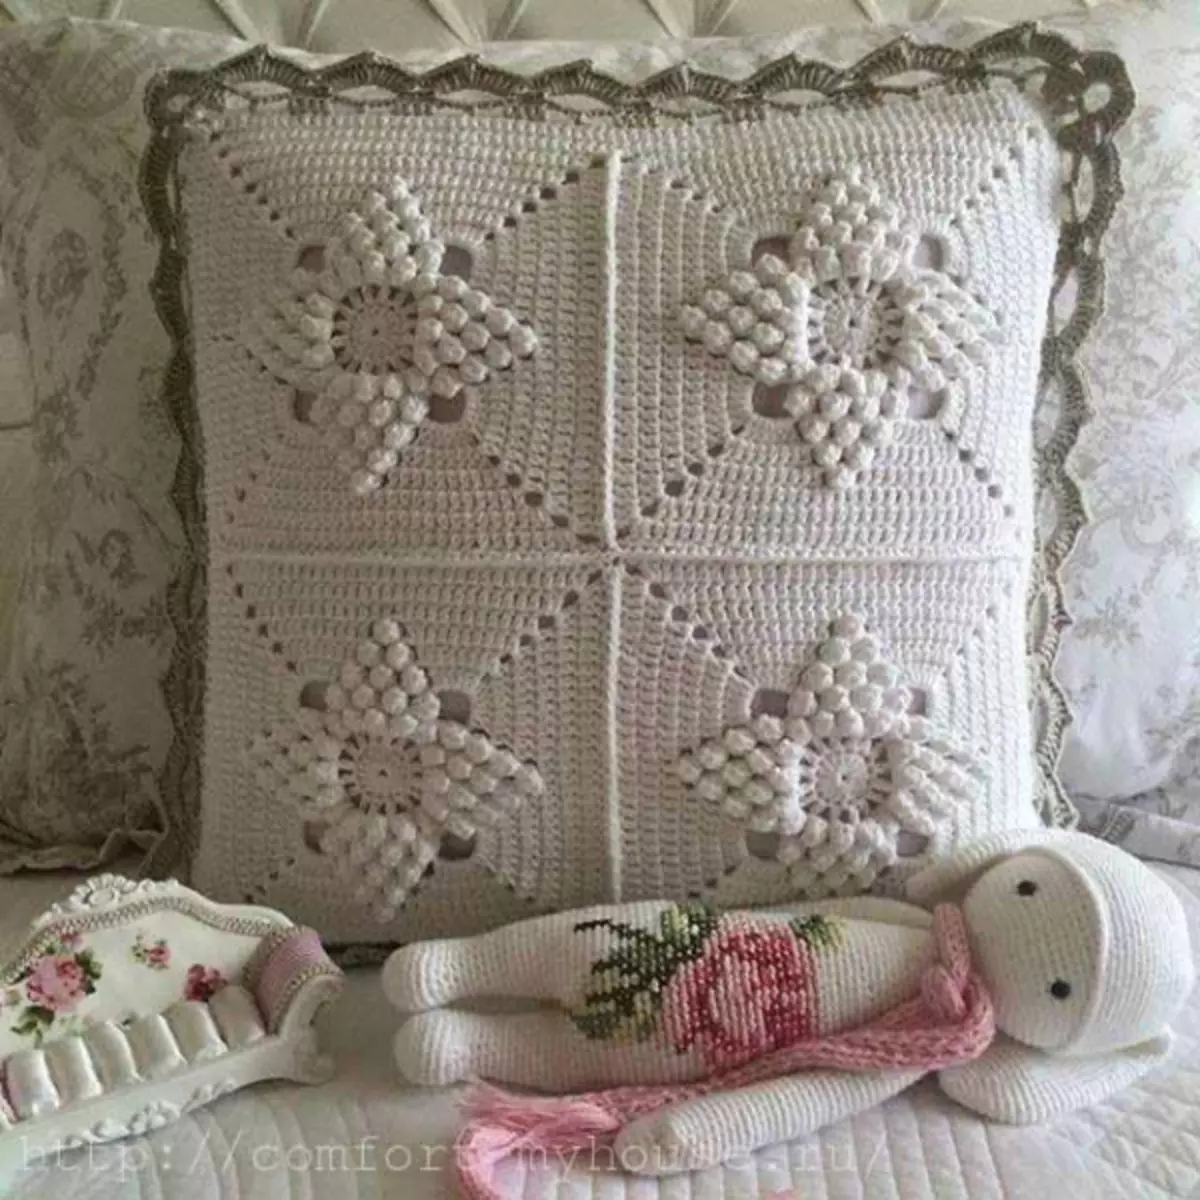 ပြောင်းဖူးပုံစံနှင့်အတူ crochet cushion